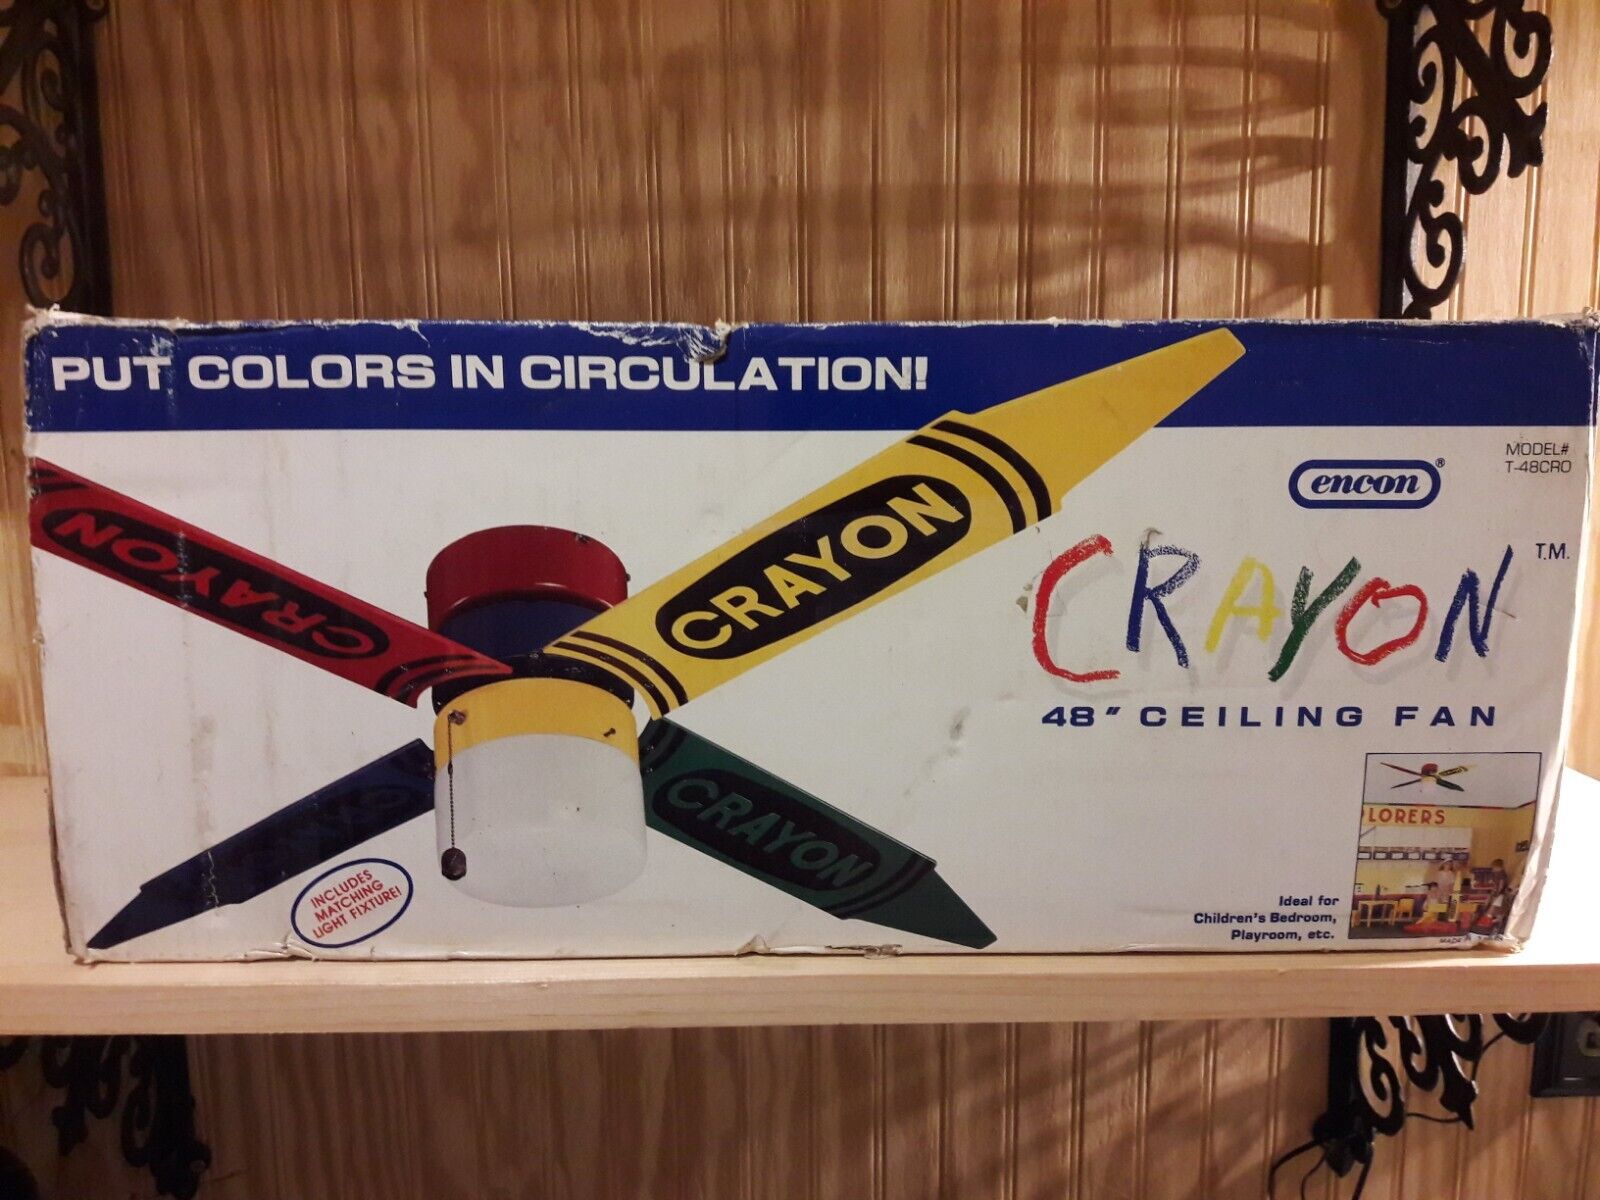 ENCON CRAYON Crayola CEILING FAN OLD VINTAGE 